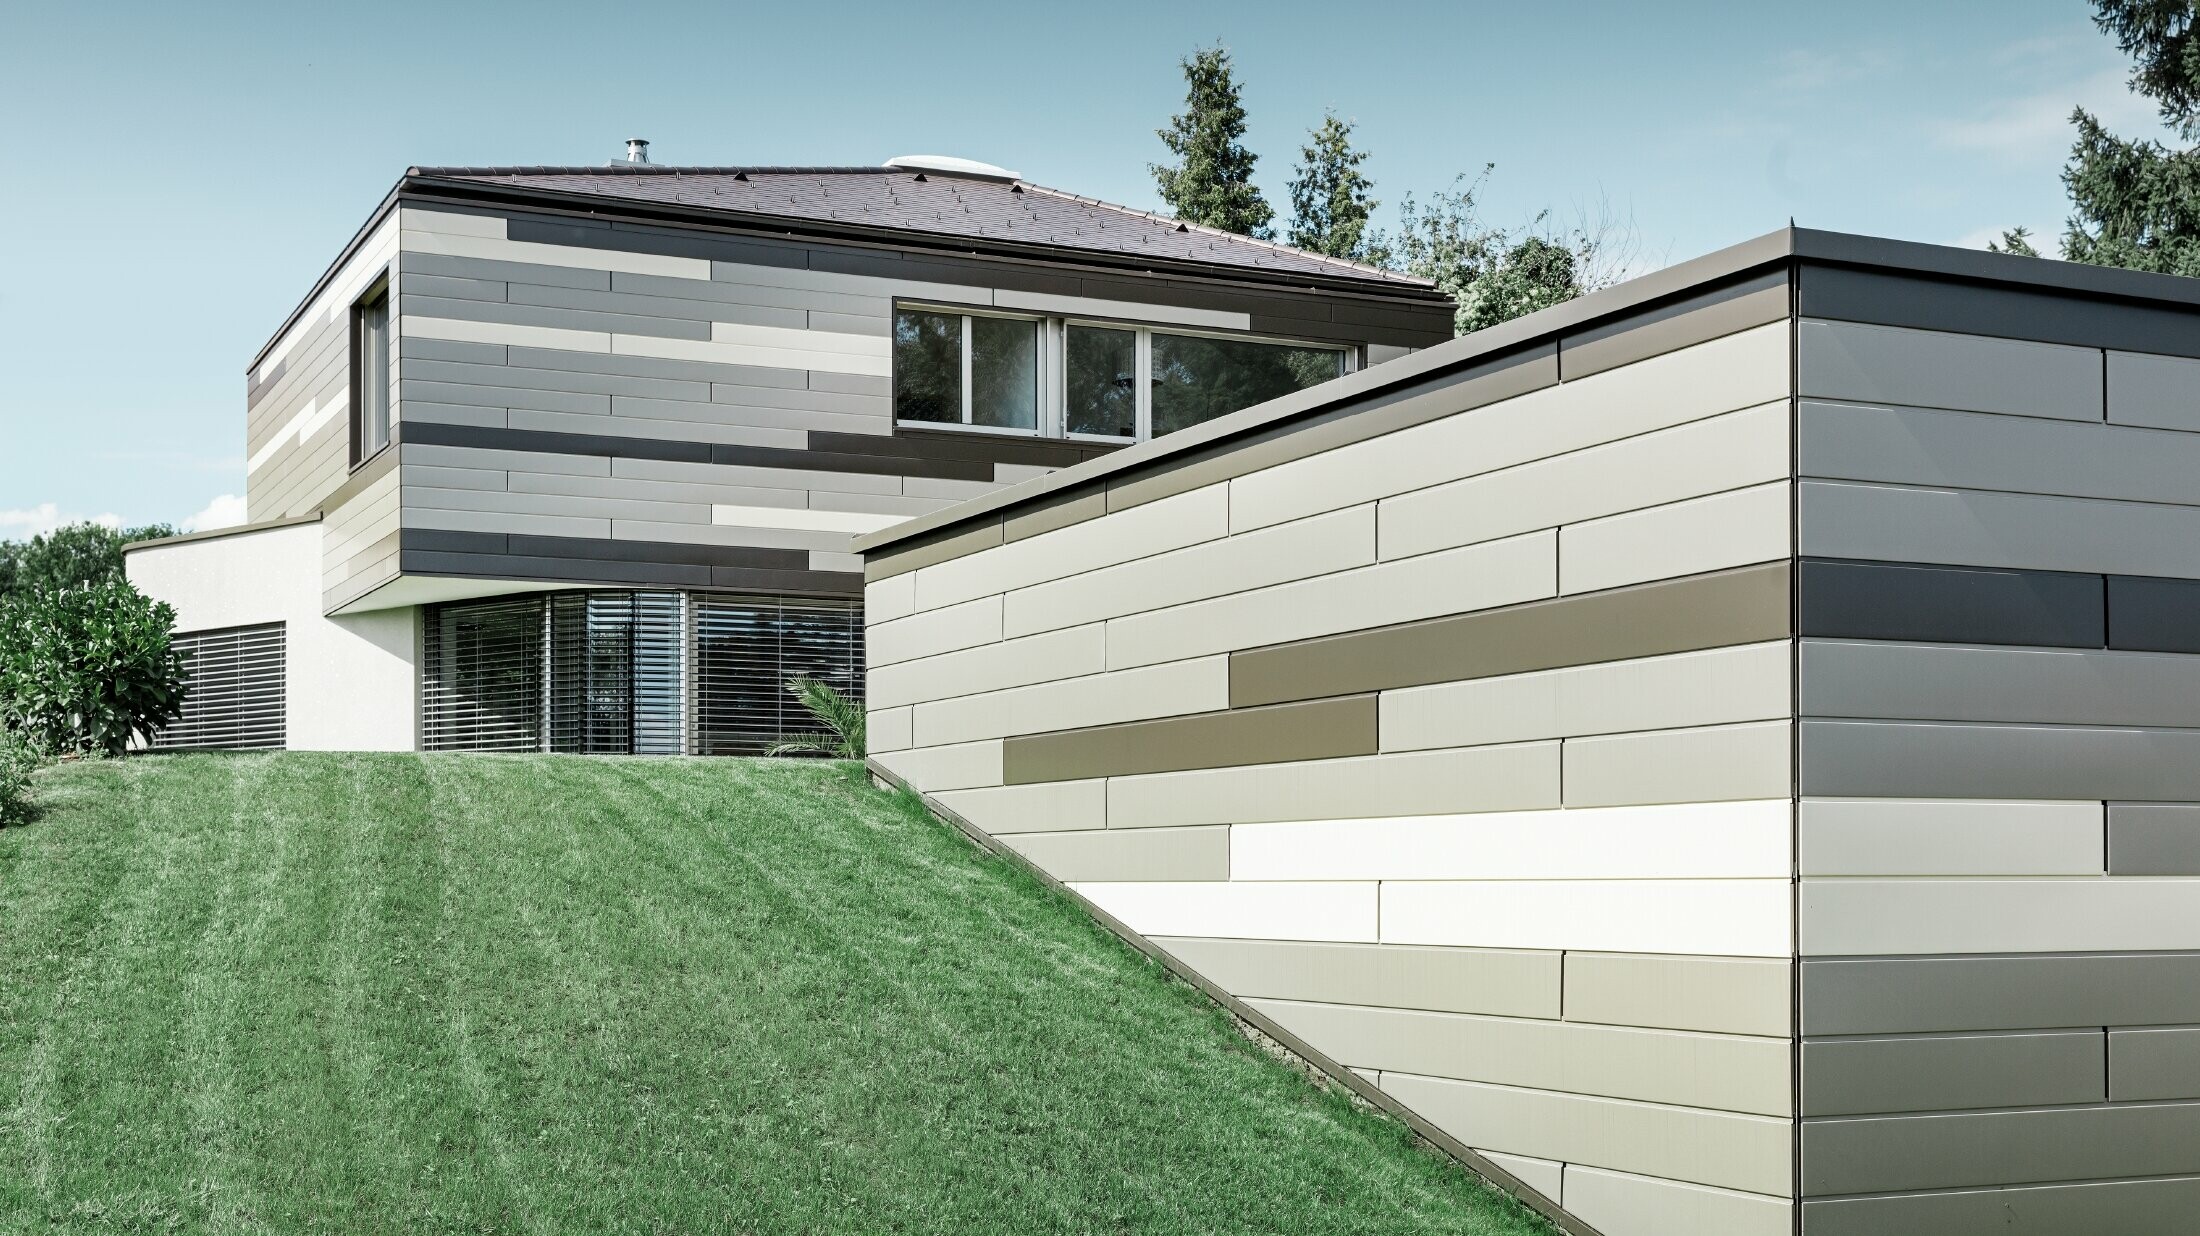 Moderne enfamiliehus med fladt tag og overdækket terrasse med en individuel formgivet aluminiumfacade af Sidings i brun, bronze og elfenben fra PREFA